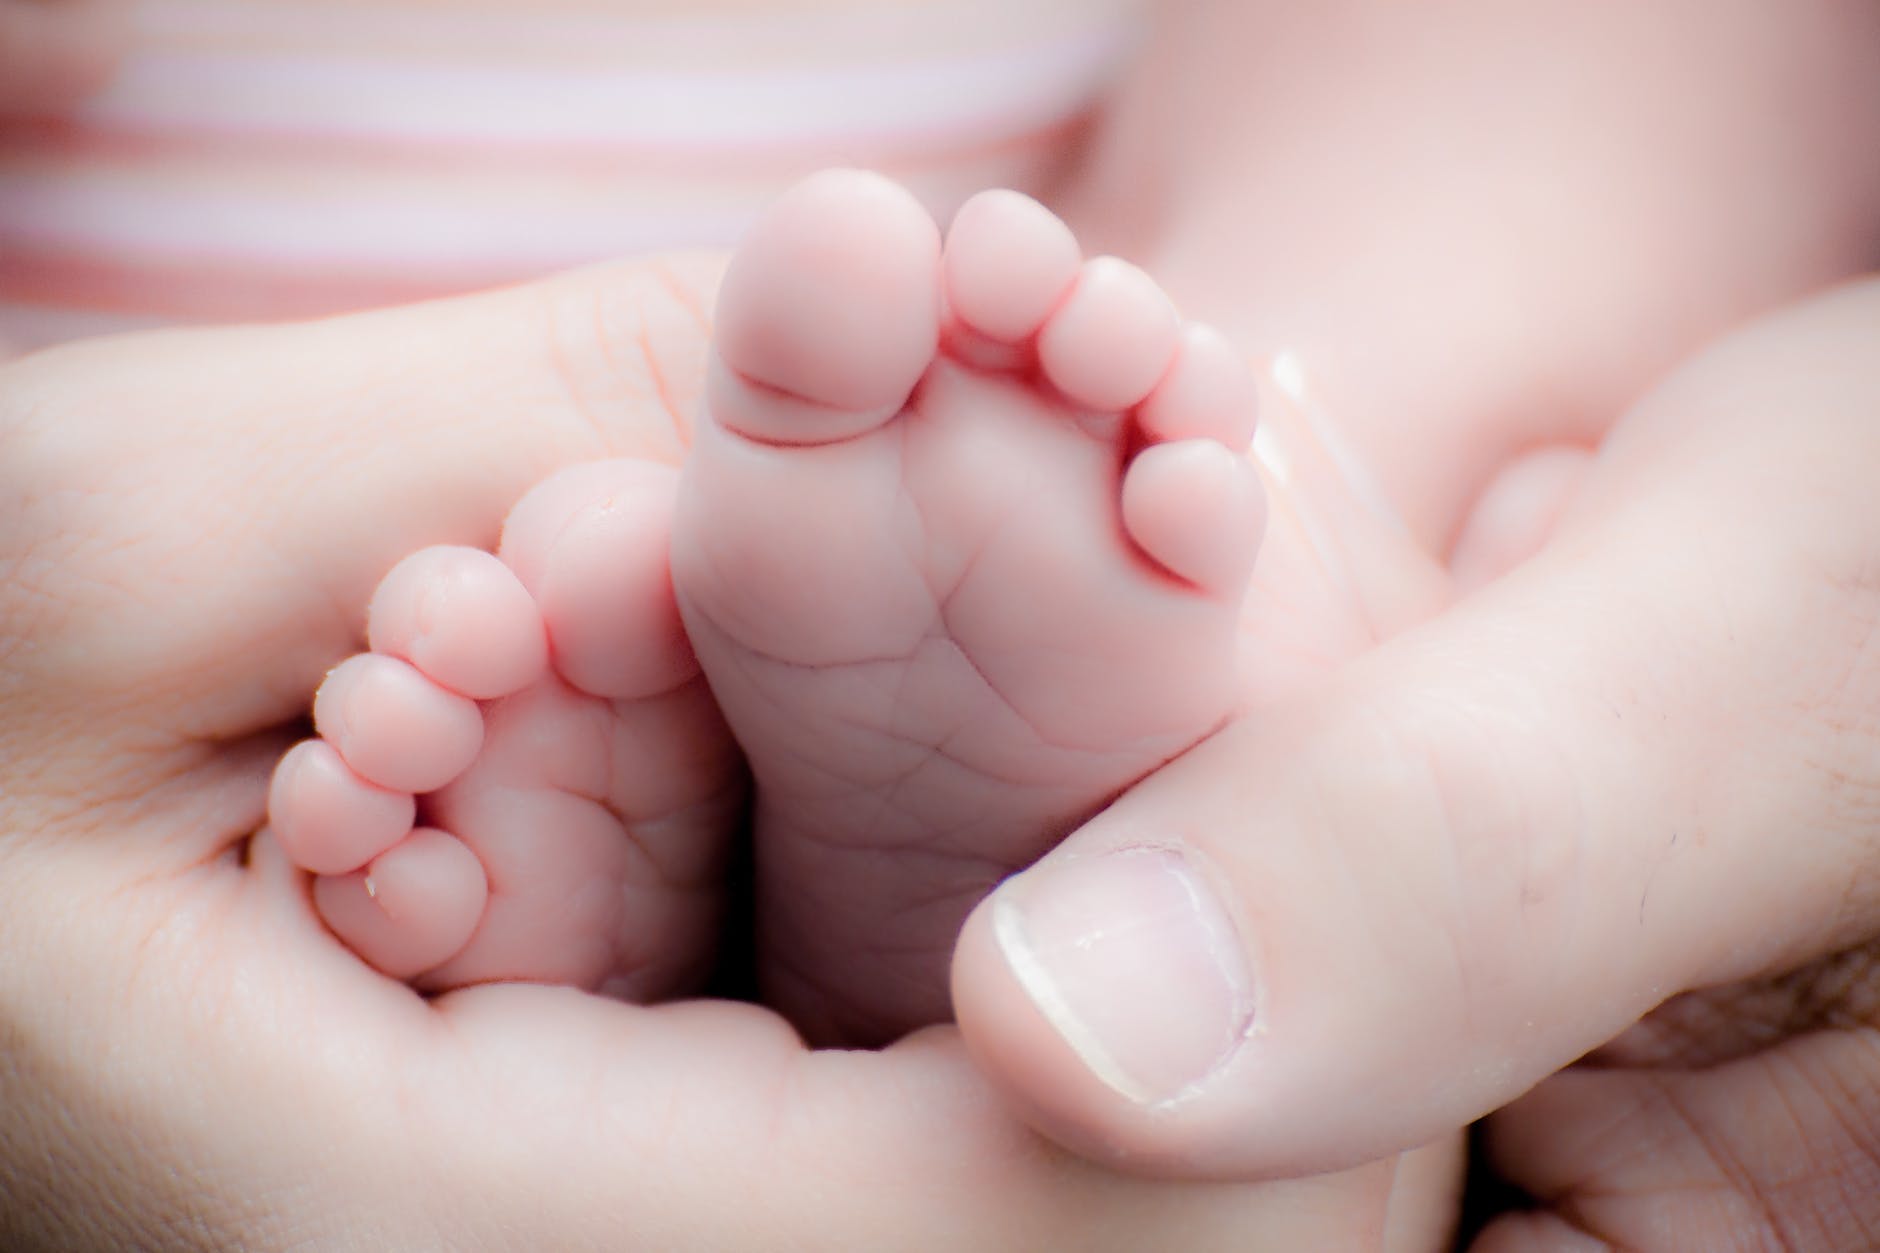 Bayi prematur meninggal setelah menghabiskan 10 jam di kamar mayat karena kesalahan